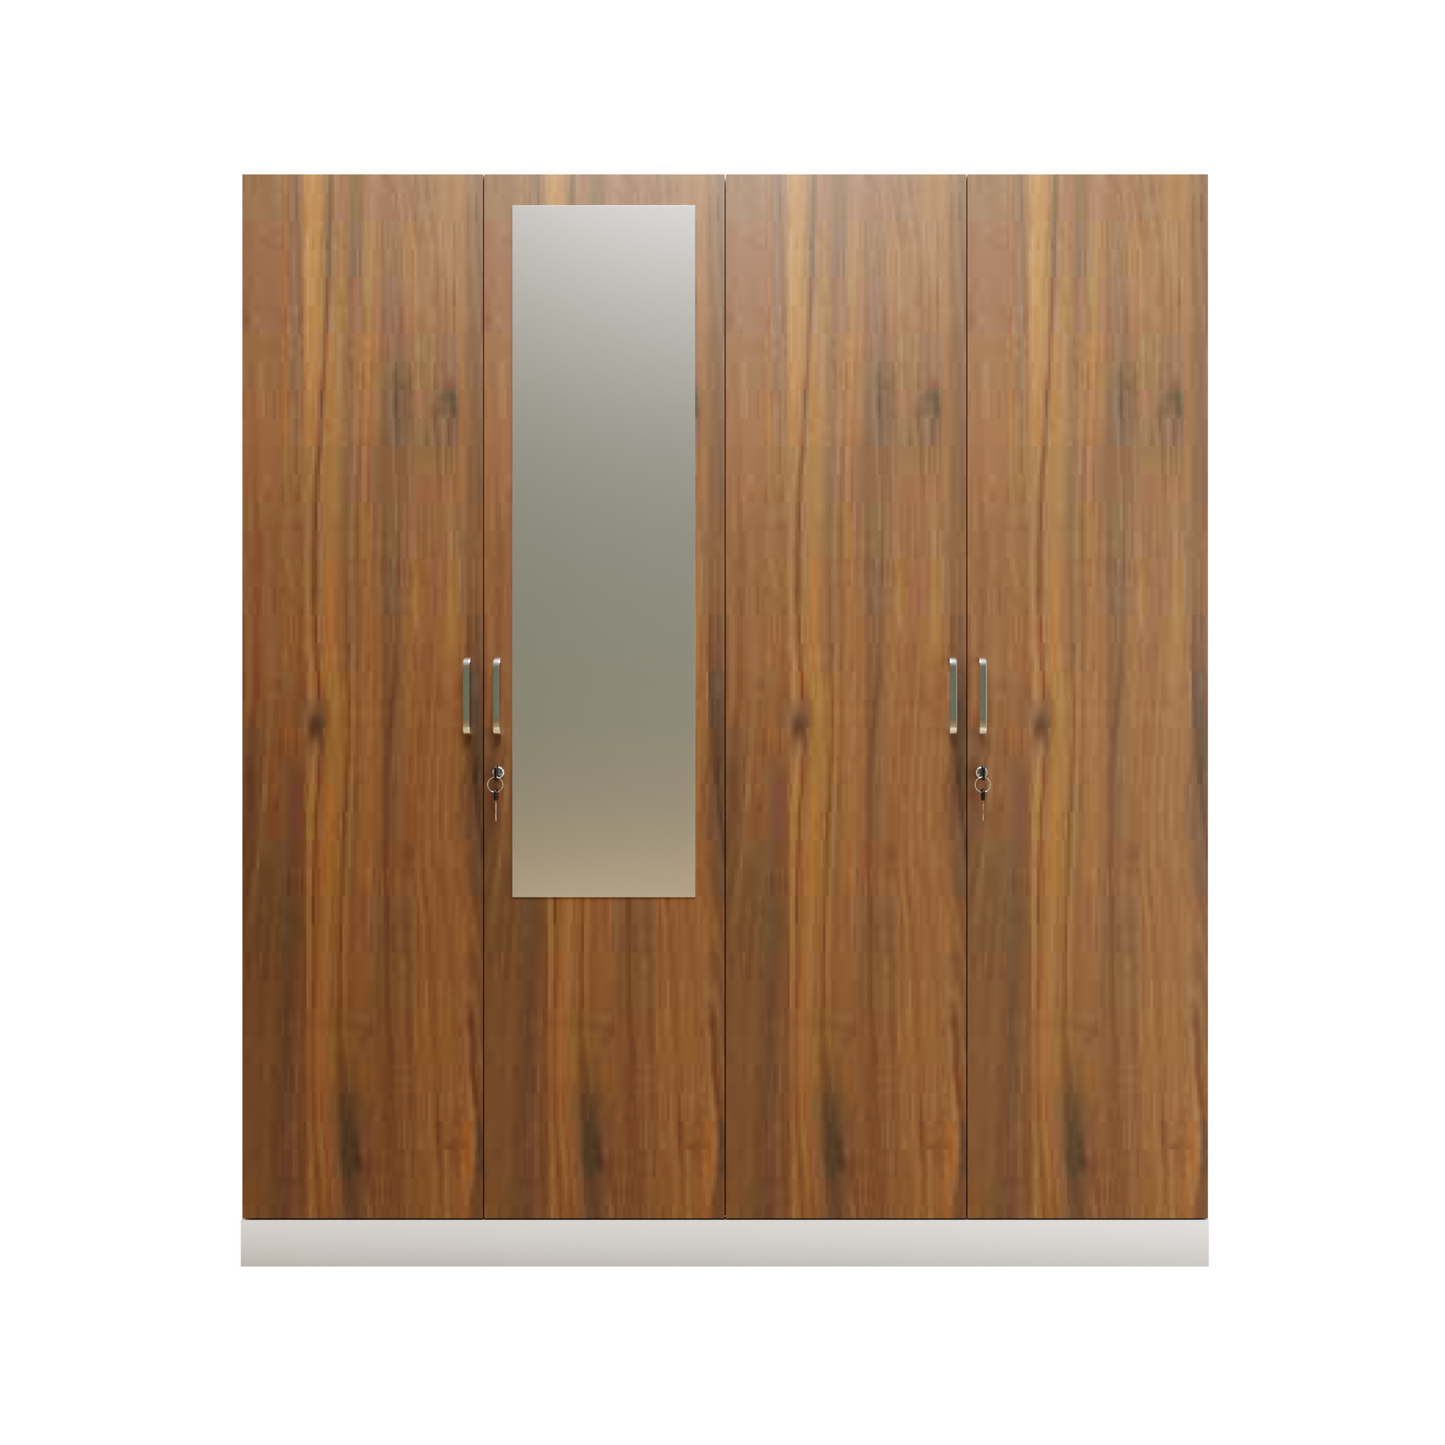 AVIRA |Wardrobe with Mirror, Hinged | 4 Door, 2 Inside Drawer Wardrobes VIKI FURNITURE   